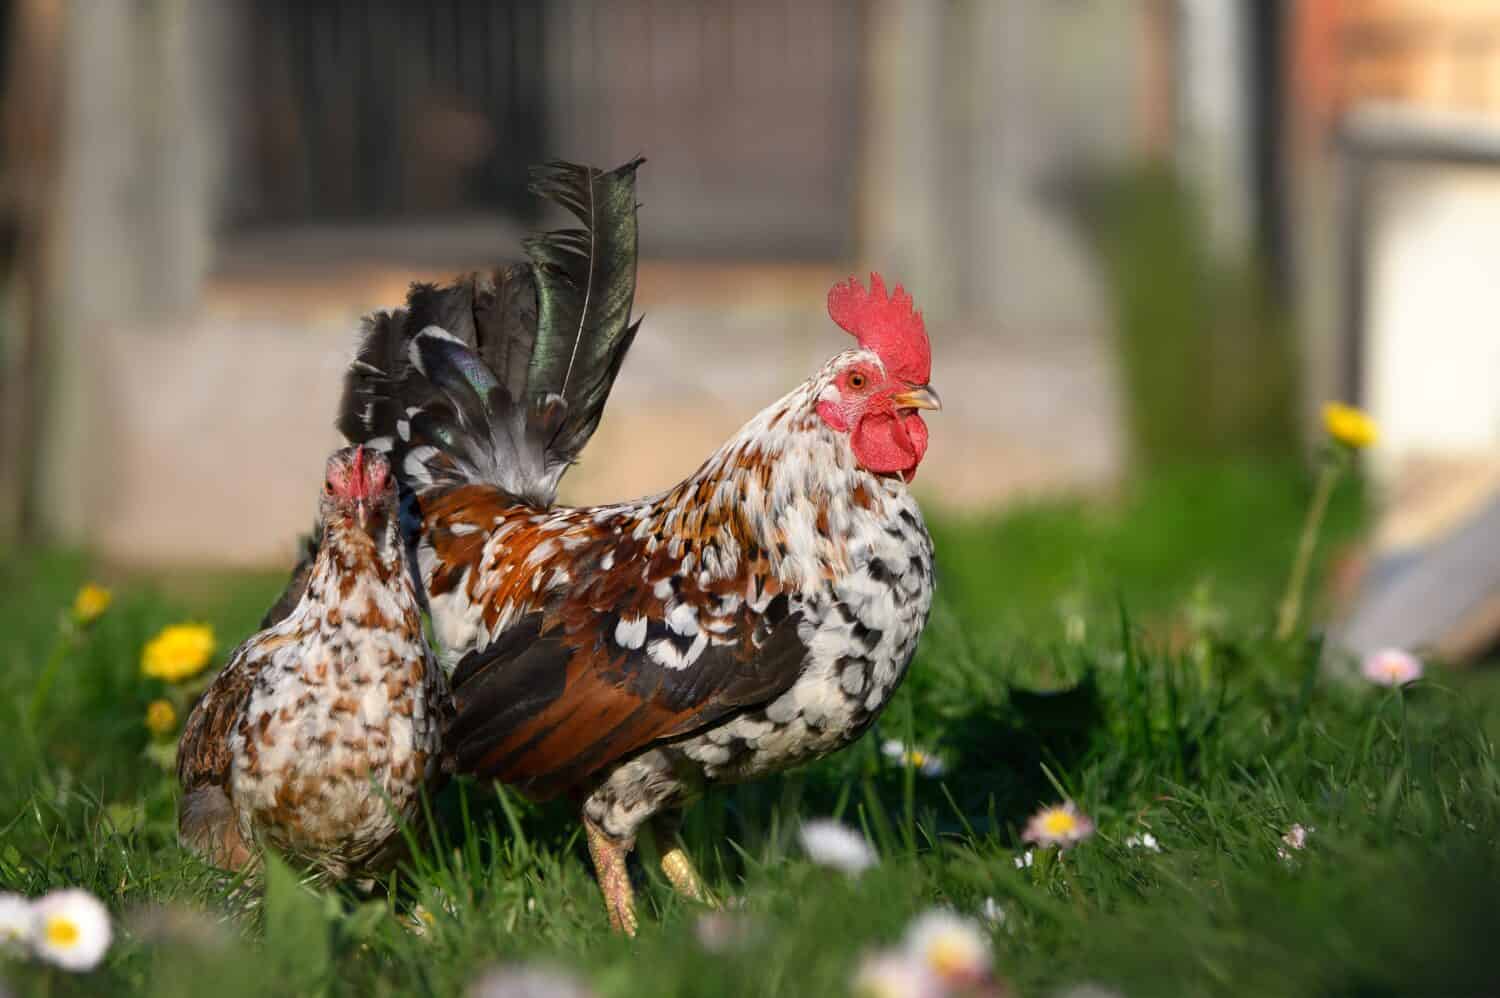 polli nani in posa all'aperto sull'erba sotto il caldo sole primaverile